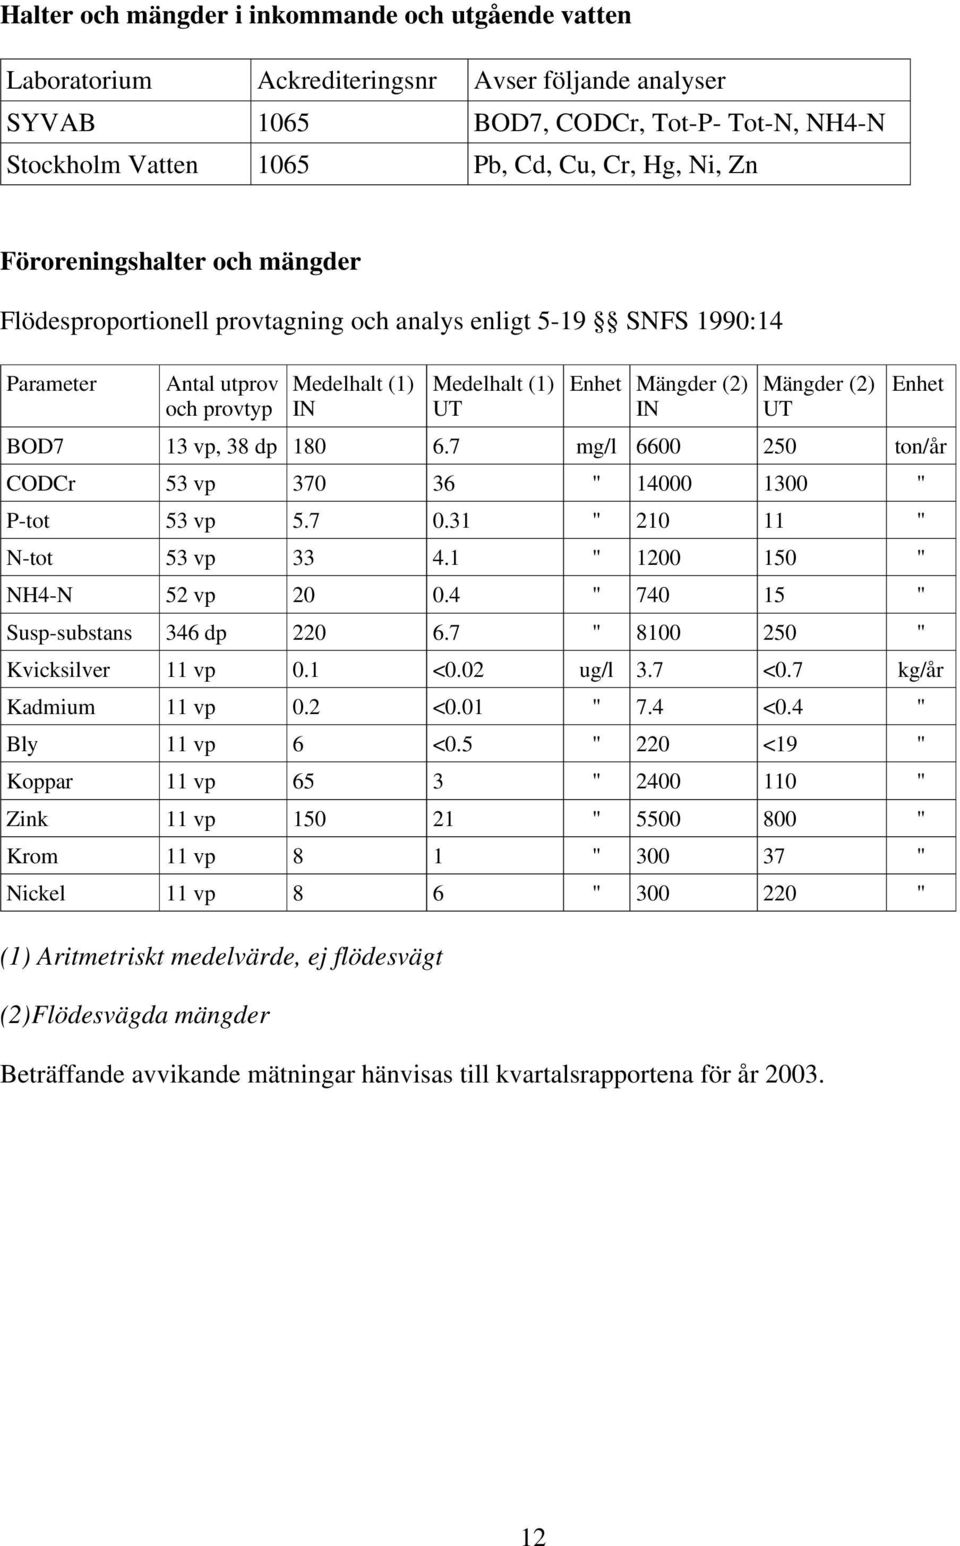 UT Enhet BOD7 13 vp, 38 dp 180 6.7 mg/l 6600 250 ton/år CODCr 53 vp 370 36 " 14000 1300 " P-tot 53 vp 5.7 0.31 " 210 11 " N-tot 53 vp 33 4.1 " 1200 150 " NH4-N 52 vp 20 0.